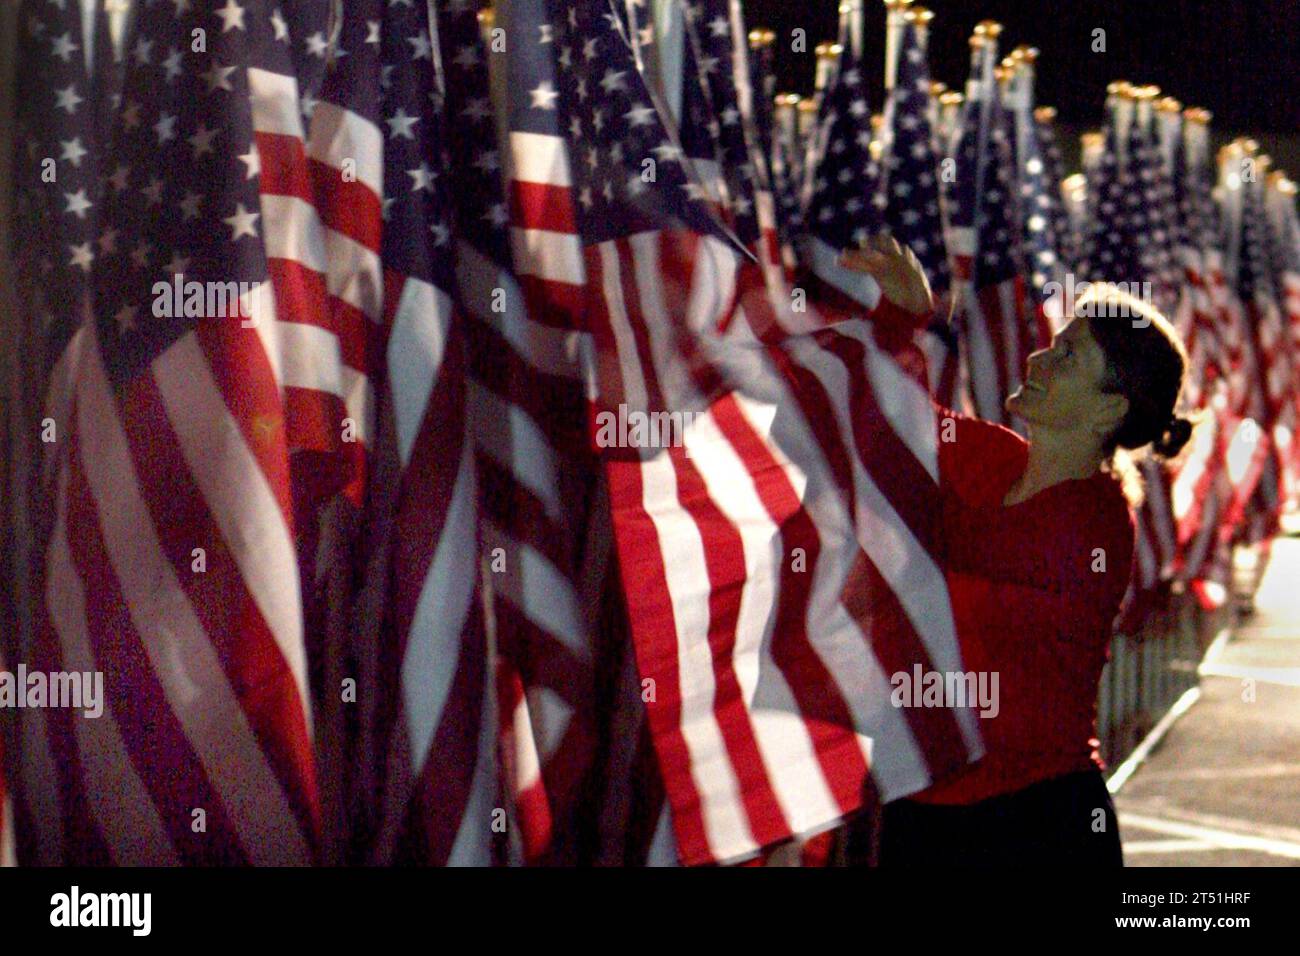 0809107377C-021 WASHINGTON (10 settembre 2008) Lorin Pfiel, volontario della Healing Field Foundation, organizza una bandiera americana il 10 settembre 2008, nel parcheggio del Pentagono. Pfiel è uno dei circa 200 volontari che organizzano quasi 3.000 bandiere in onore delle vittime e delle famiglie dell'attacco terroristico dell'11 settembre 2001 al Pentagono. (Esercito degli Stati Uniti Foto Stock